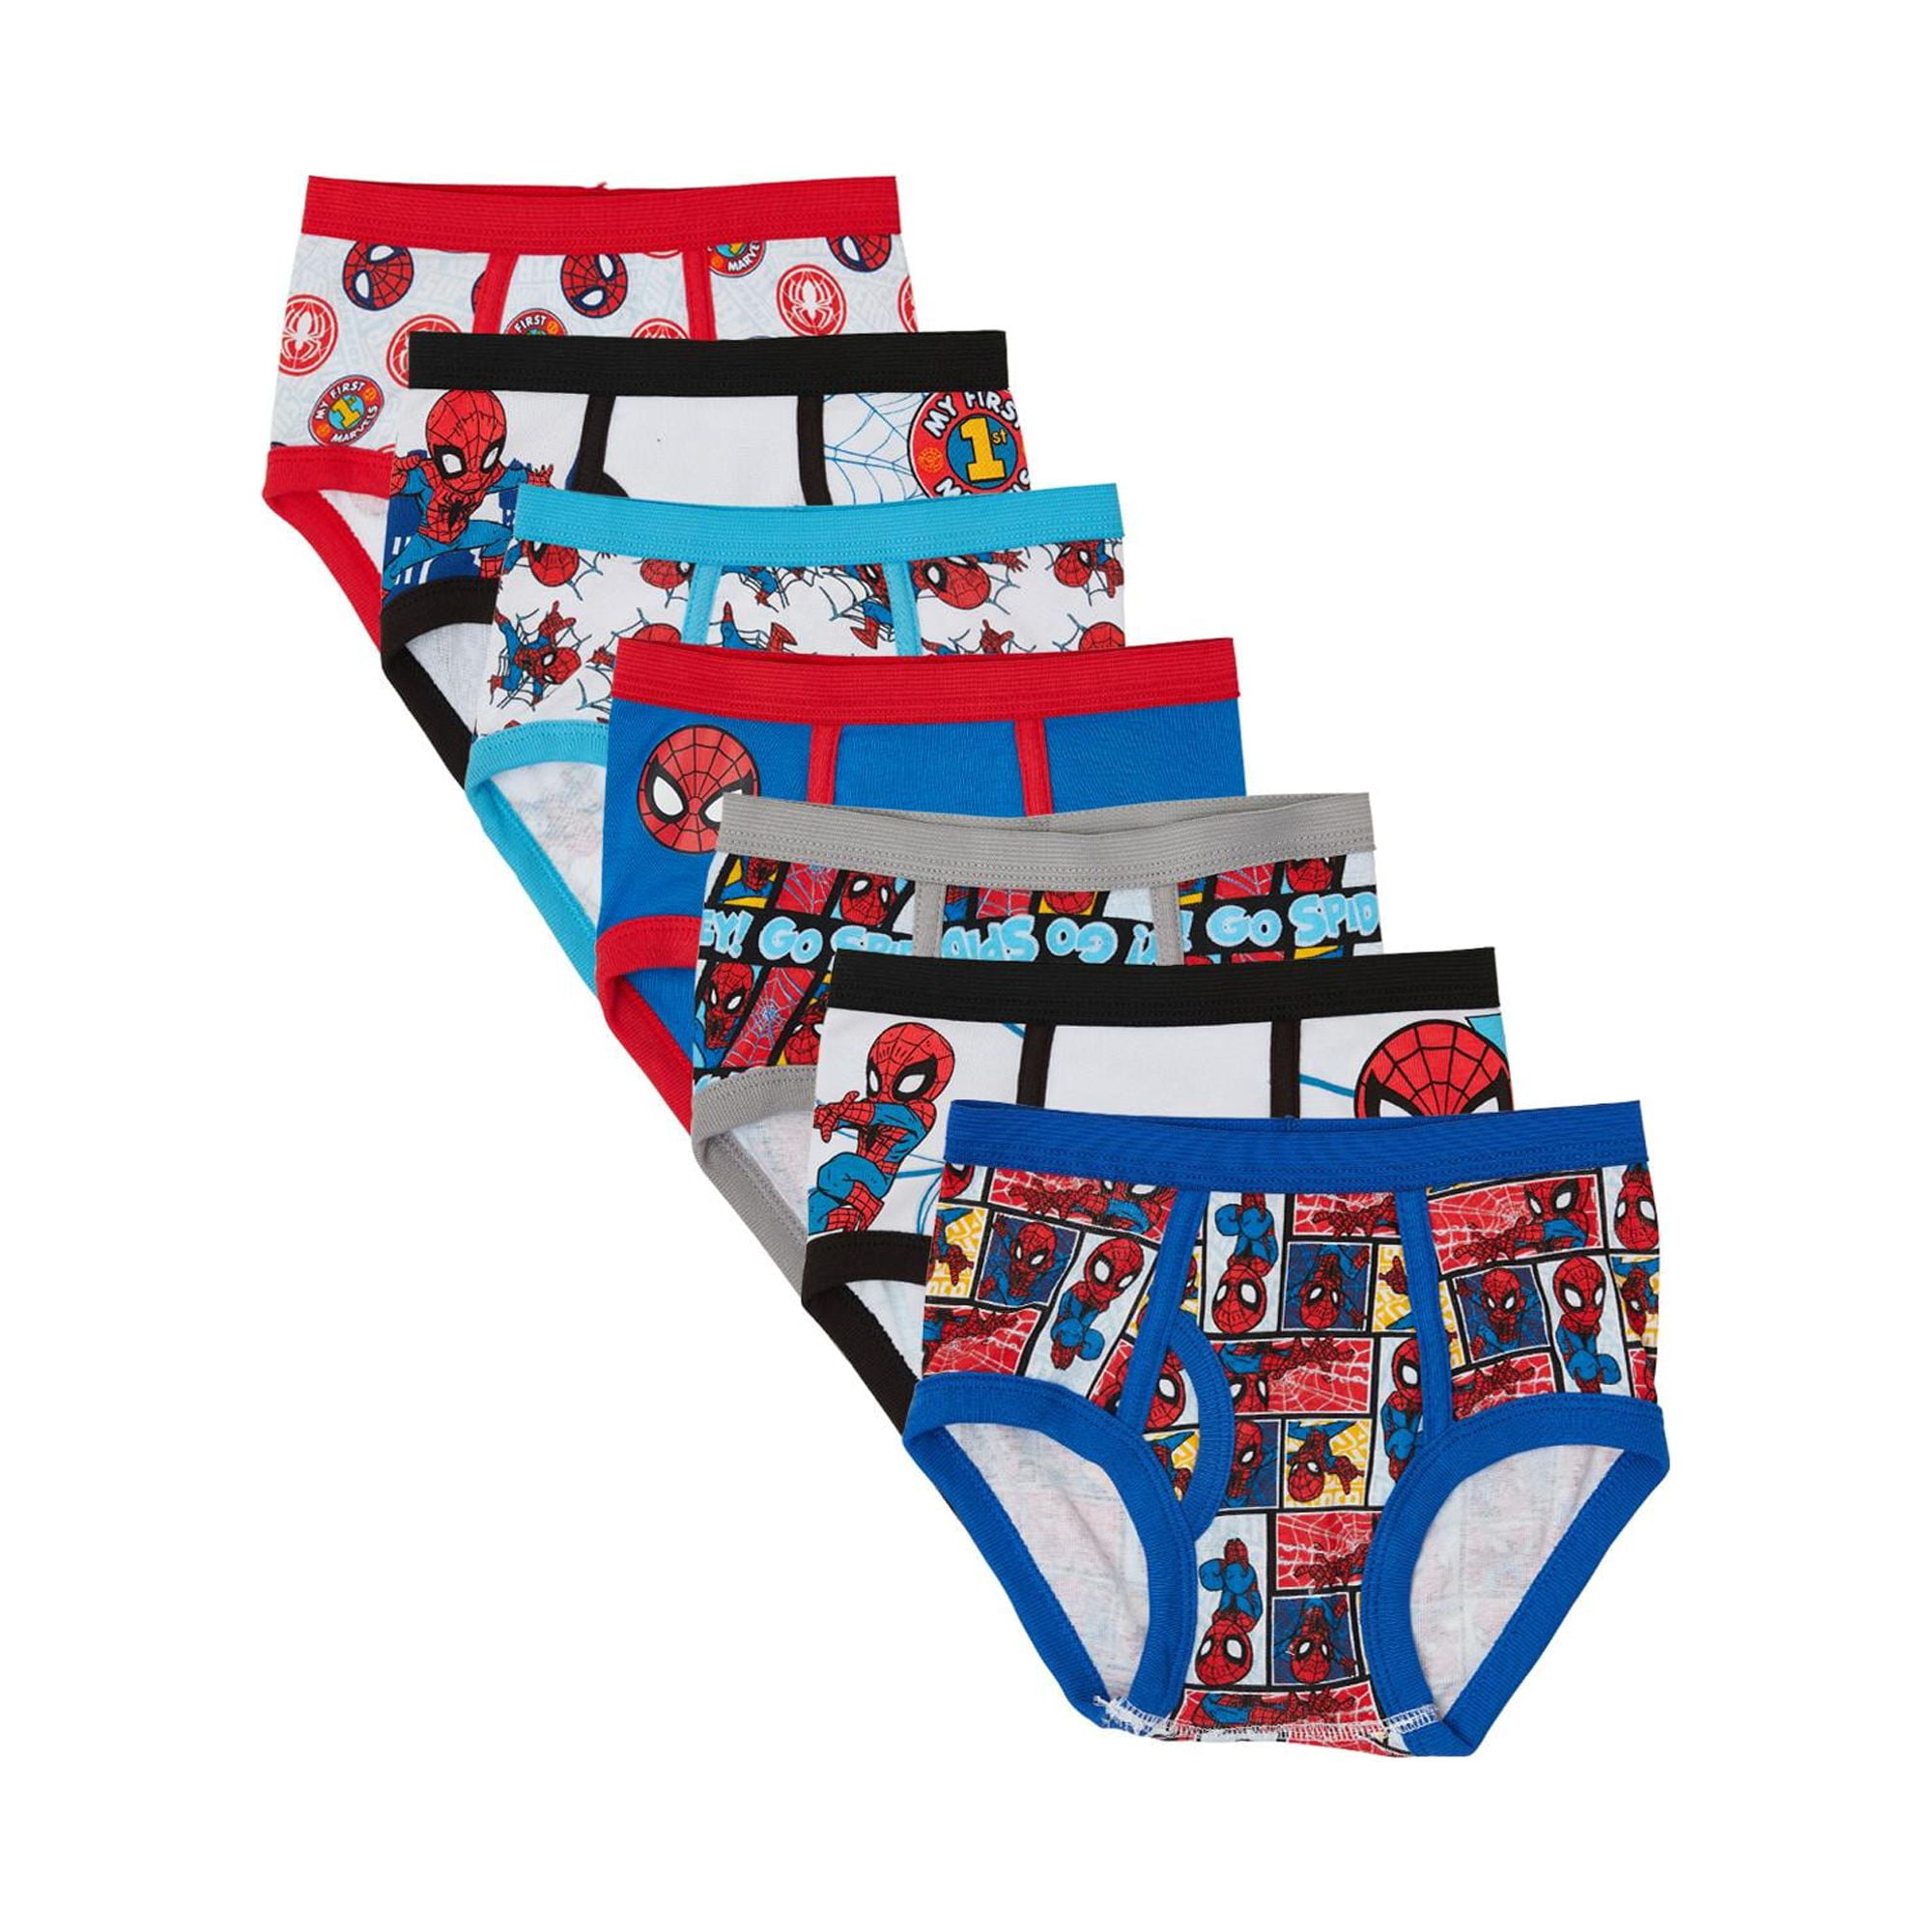 Spiderman Toddler Underwear